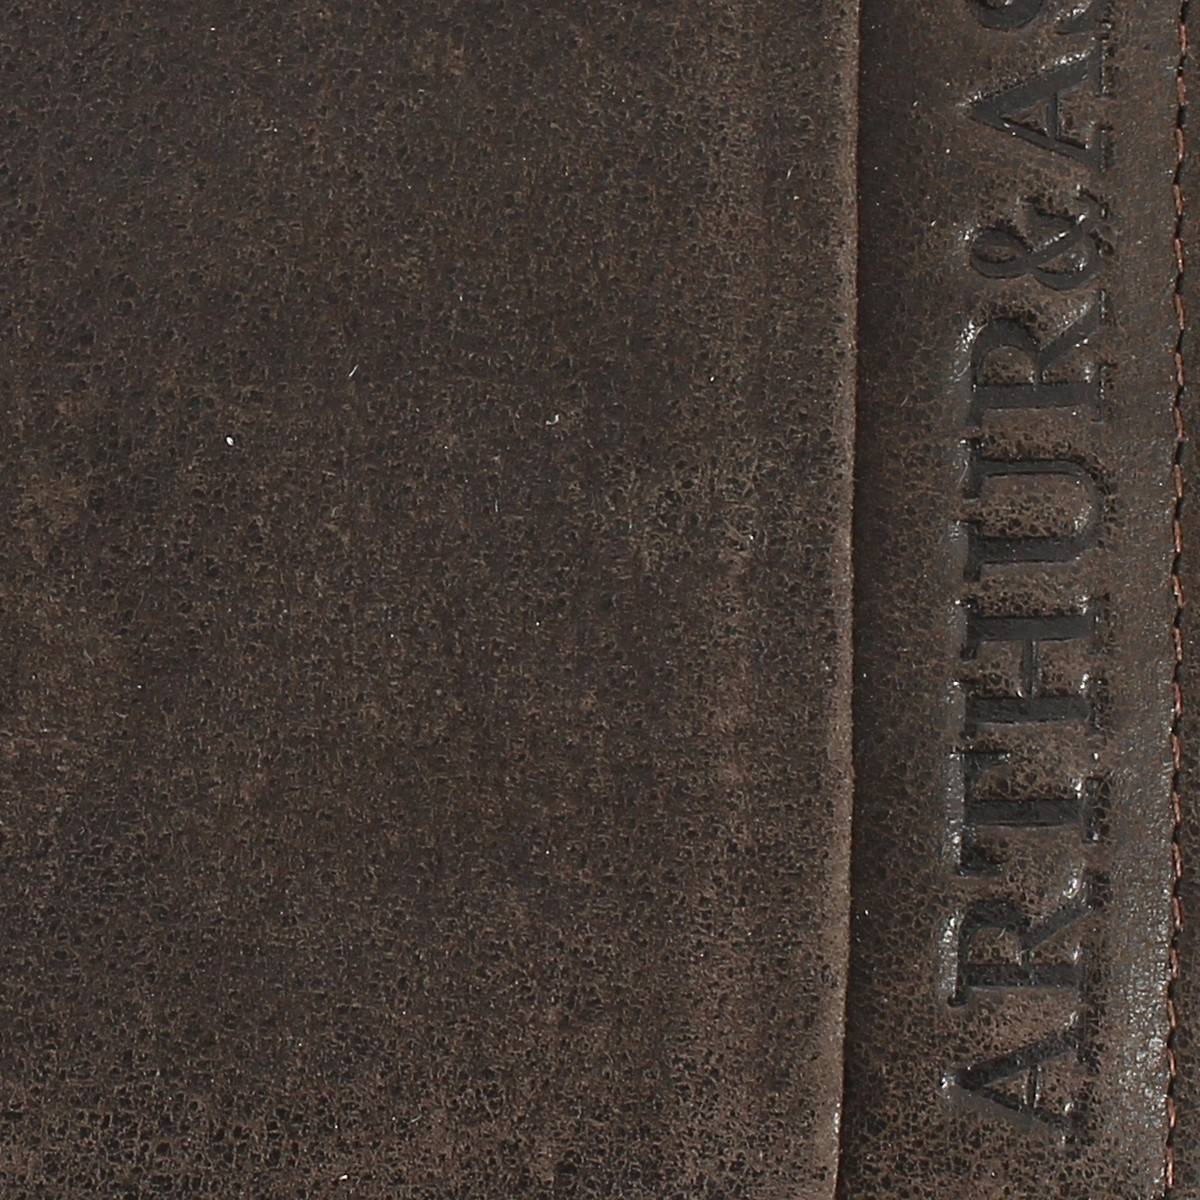 Portefeuille italien Arthur & Aston Diego 1438-499 C couleur châtaigne vue de près logo